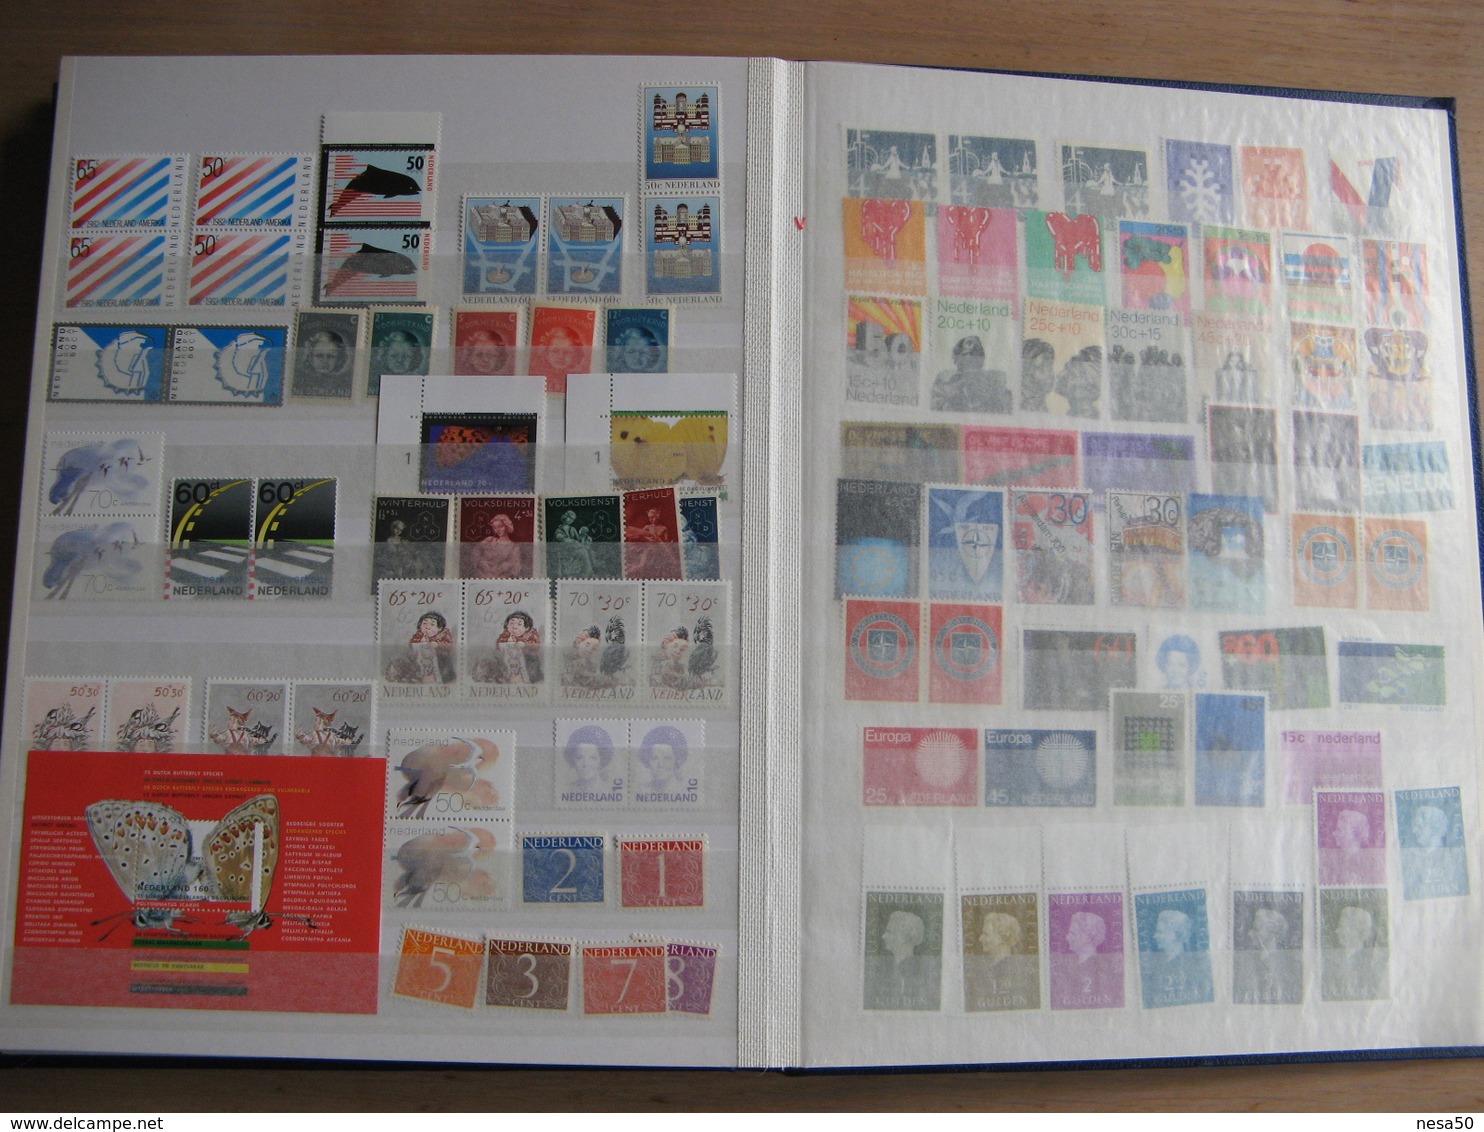 Nederland postfris guldens in blauw album 16 blz vol zie scan's